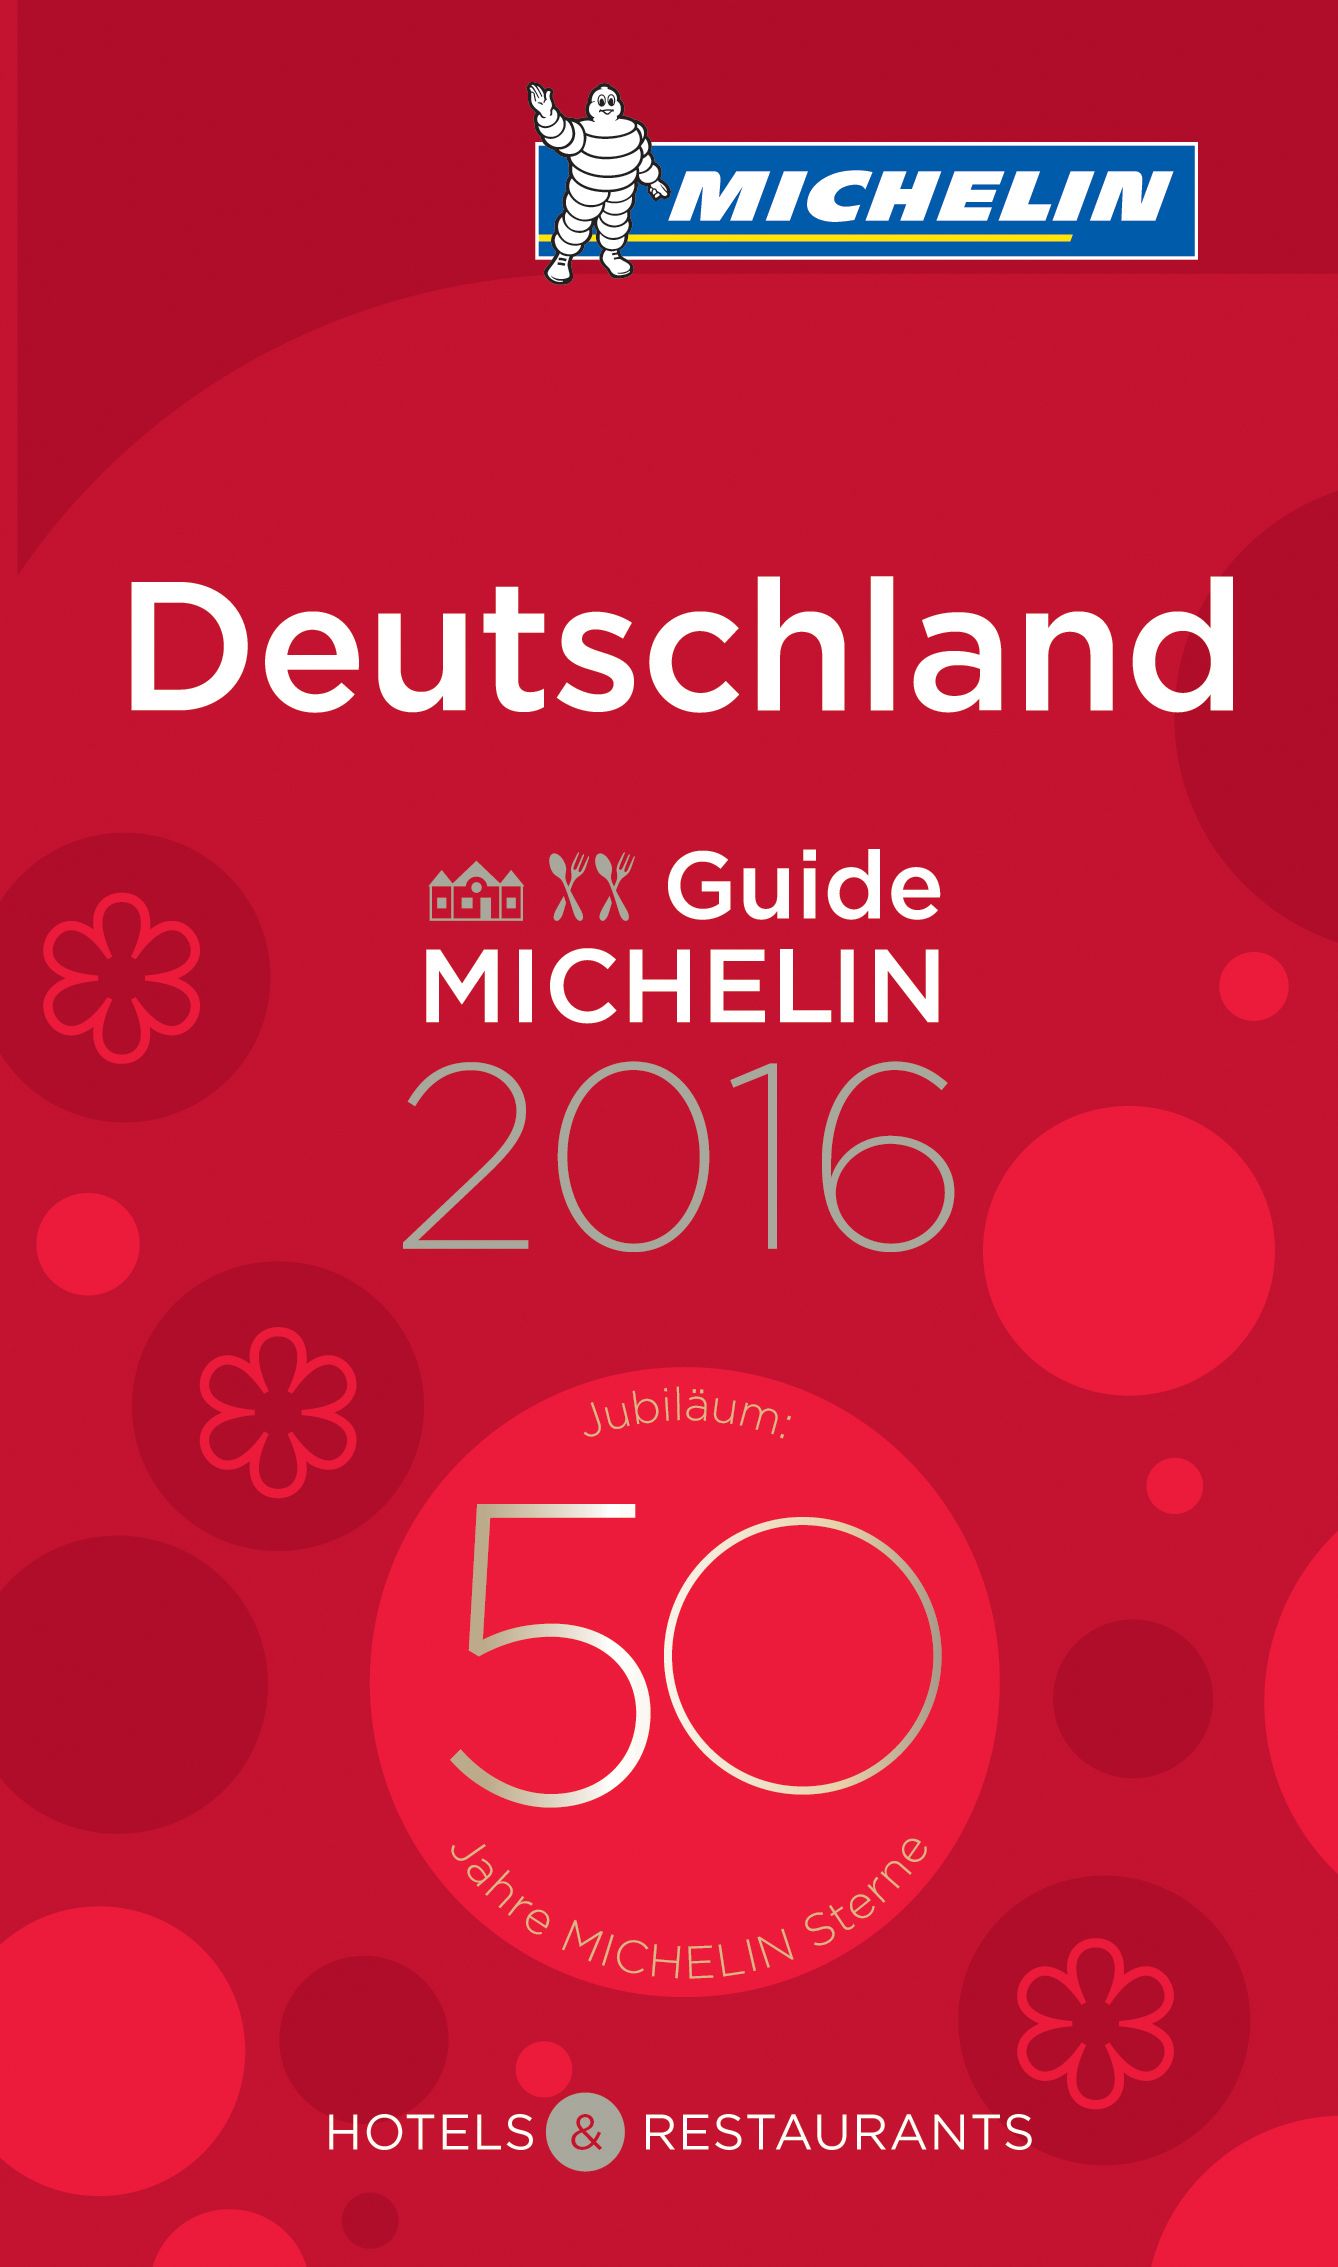 Guide Michelin Deutschland 2016